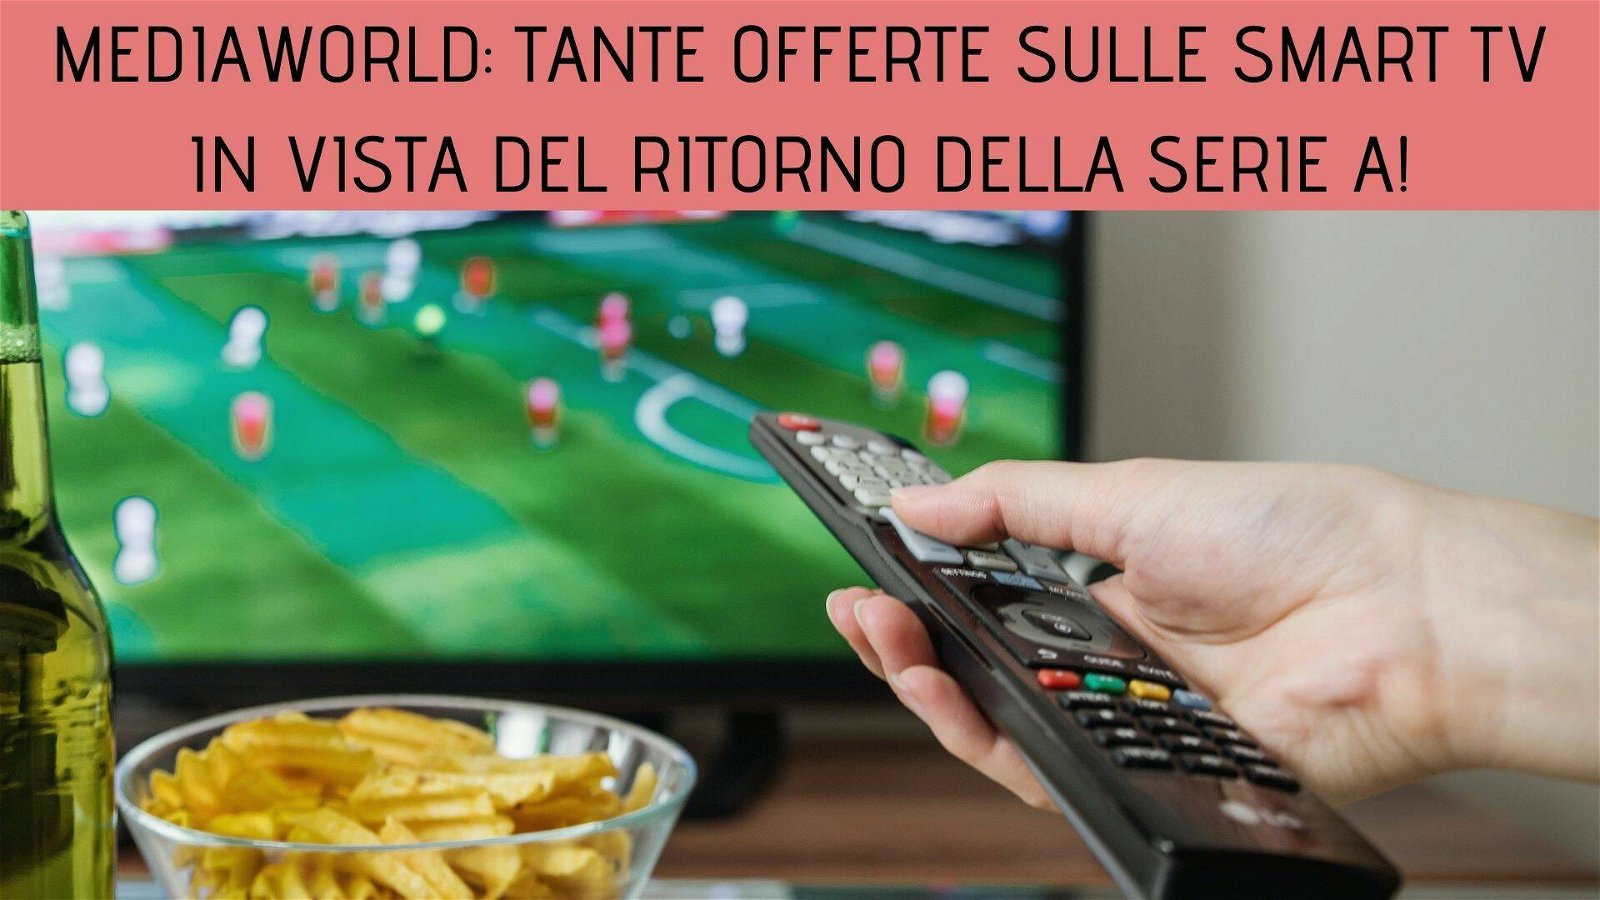 Immagine di [ULTIMI GIORNI]Mediaworld: tante nuove offerte sulle smart TV in vista del ritorno della Serie A!